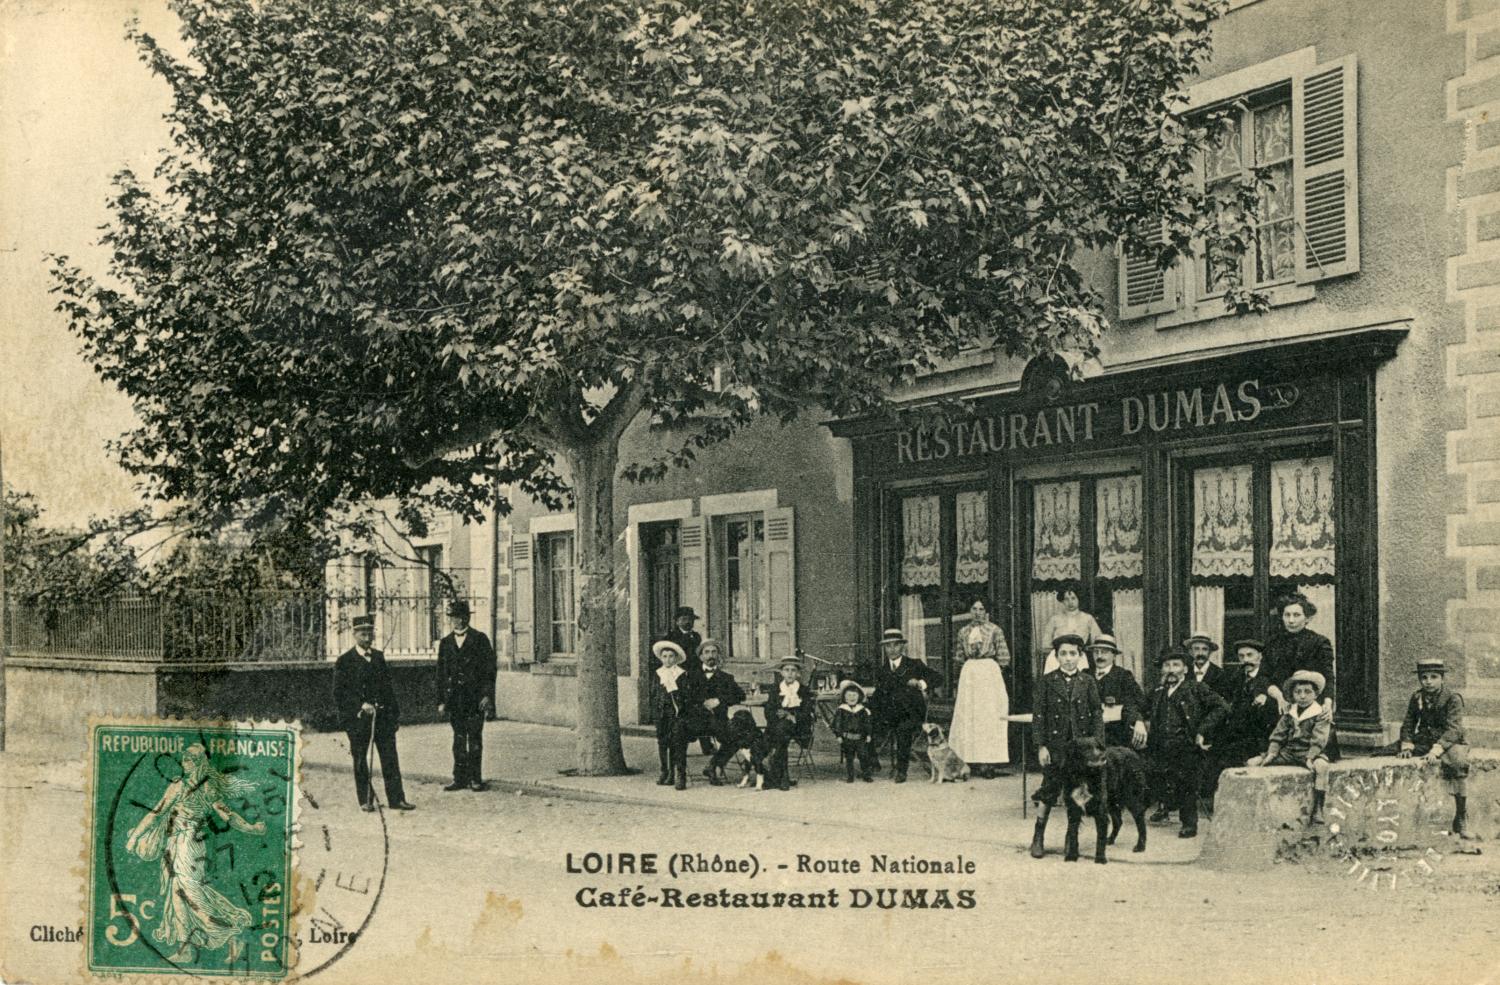 Loire (Rhône). - Route Nationale. - Café-Restaurant Dumas